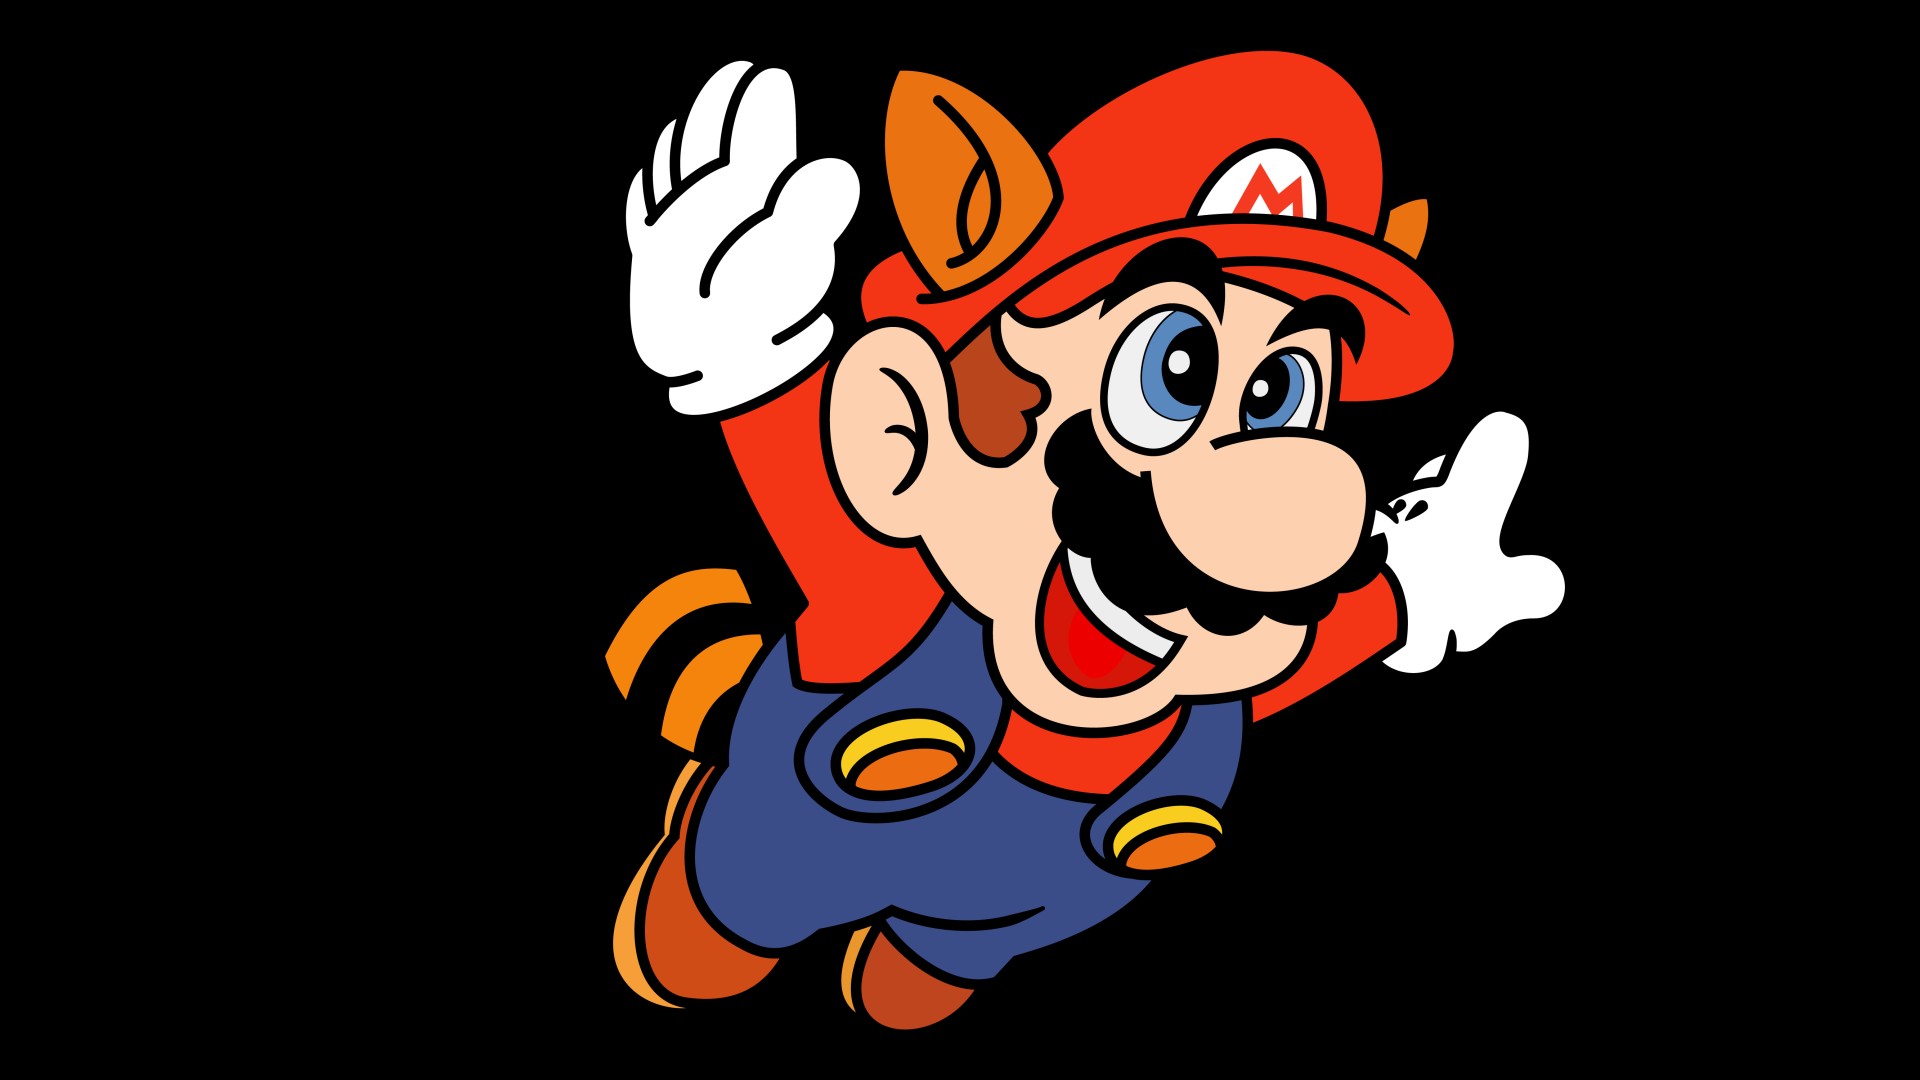 Super Mario Advance 4 Super Mario Bros 3 HD download for free